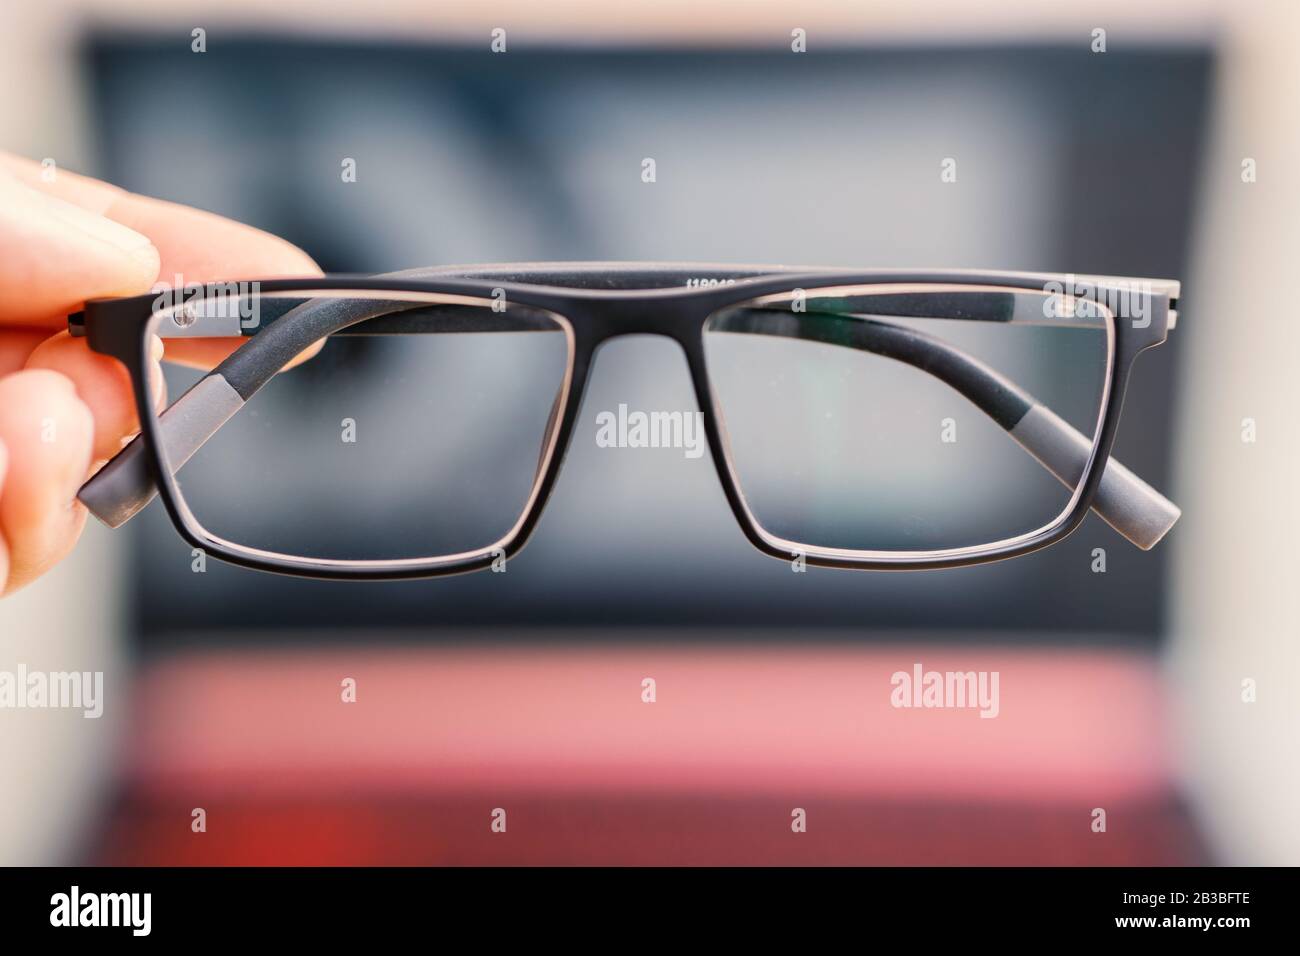 uso informático con gafas para la salud de los ojos, concepto de imagen Foto de stock